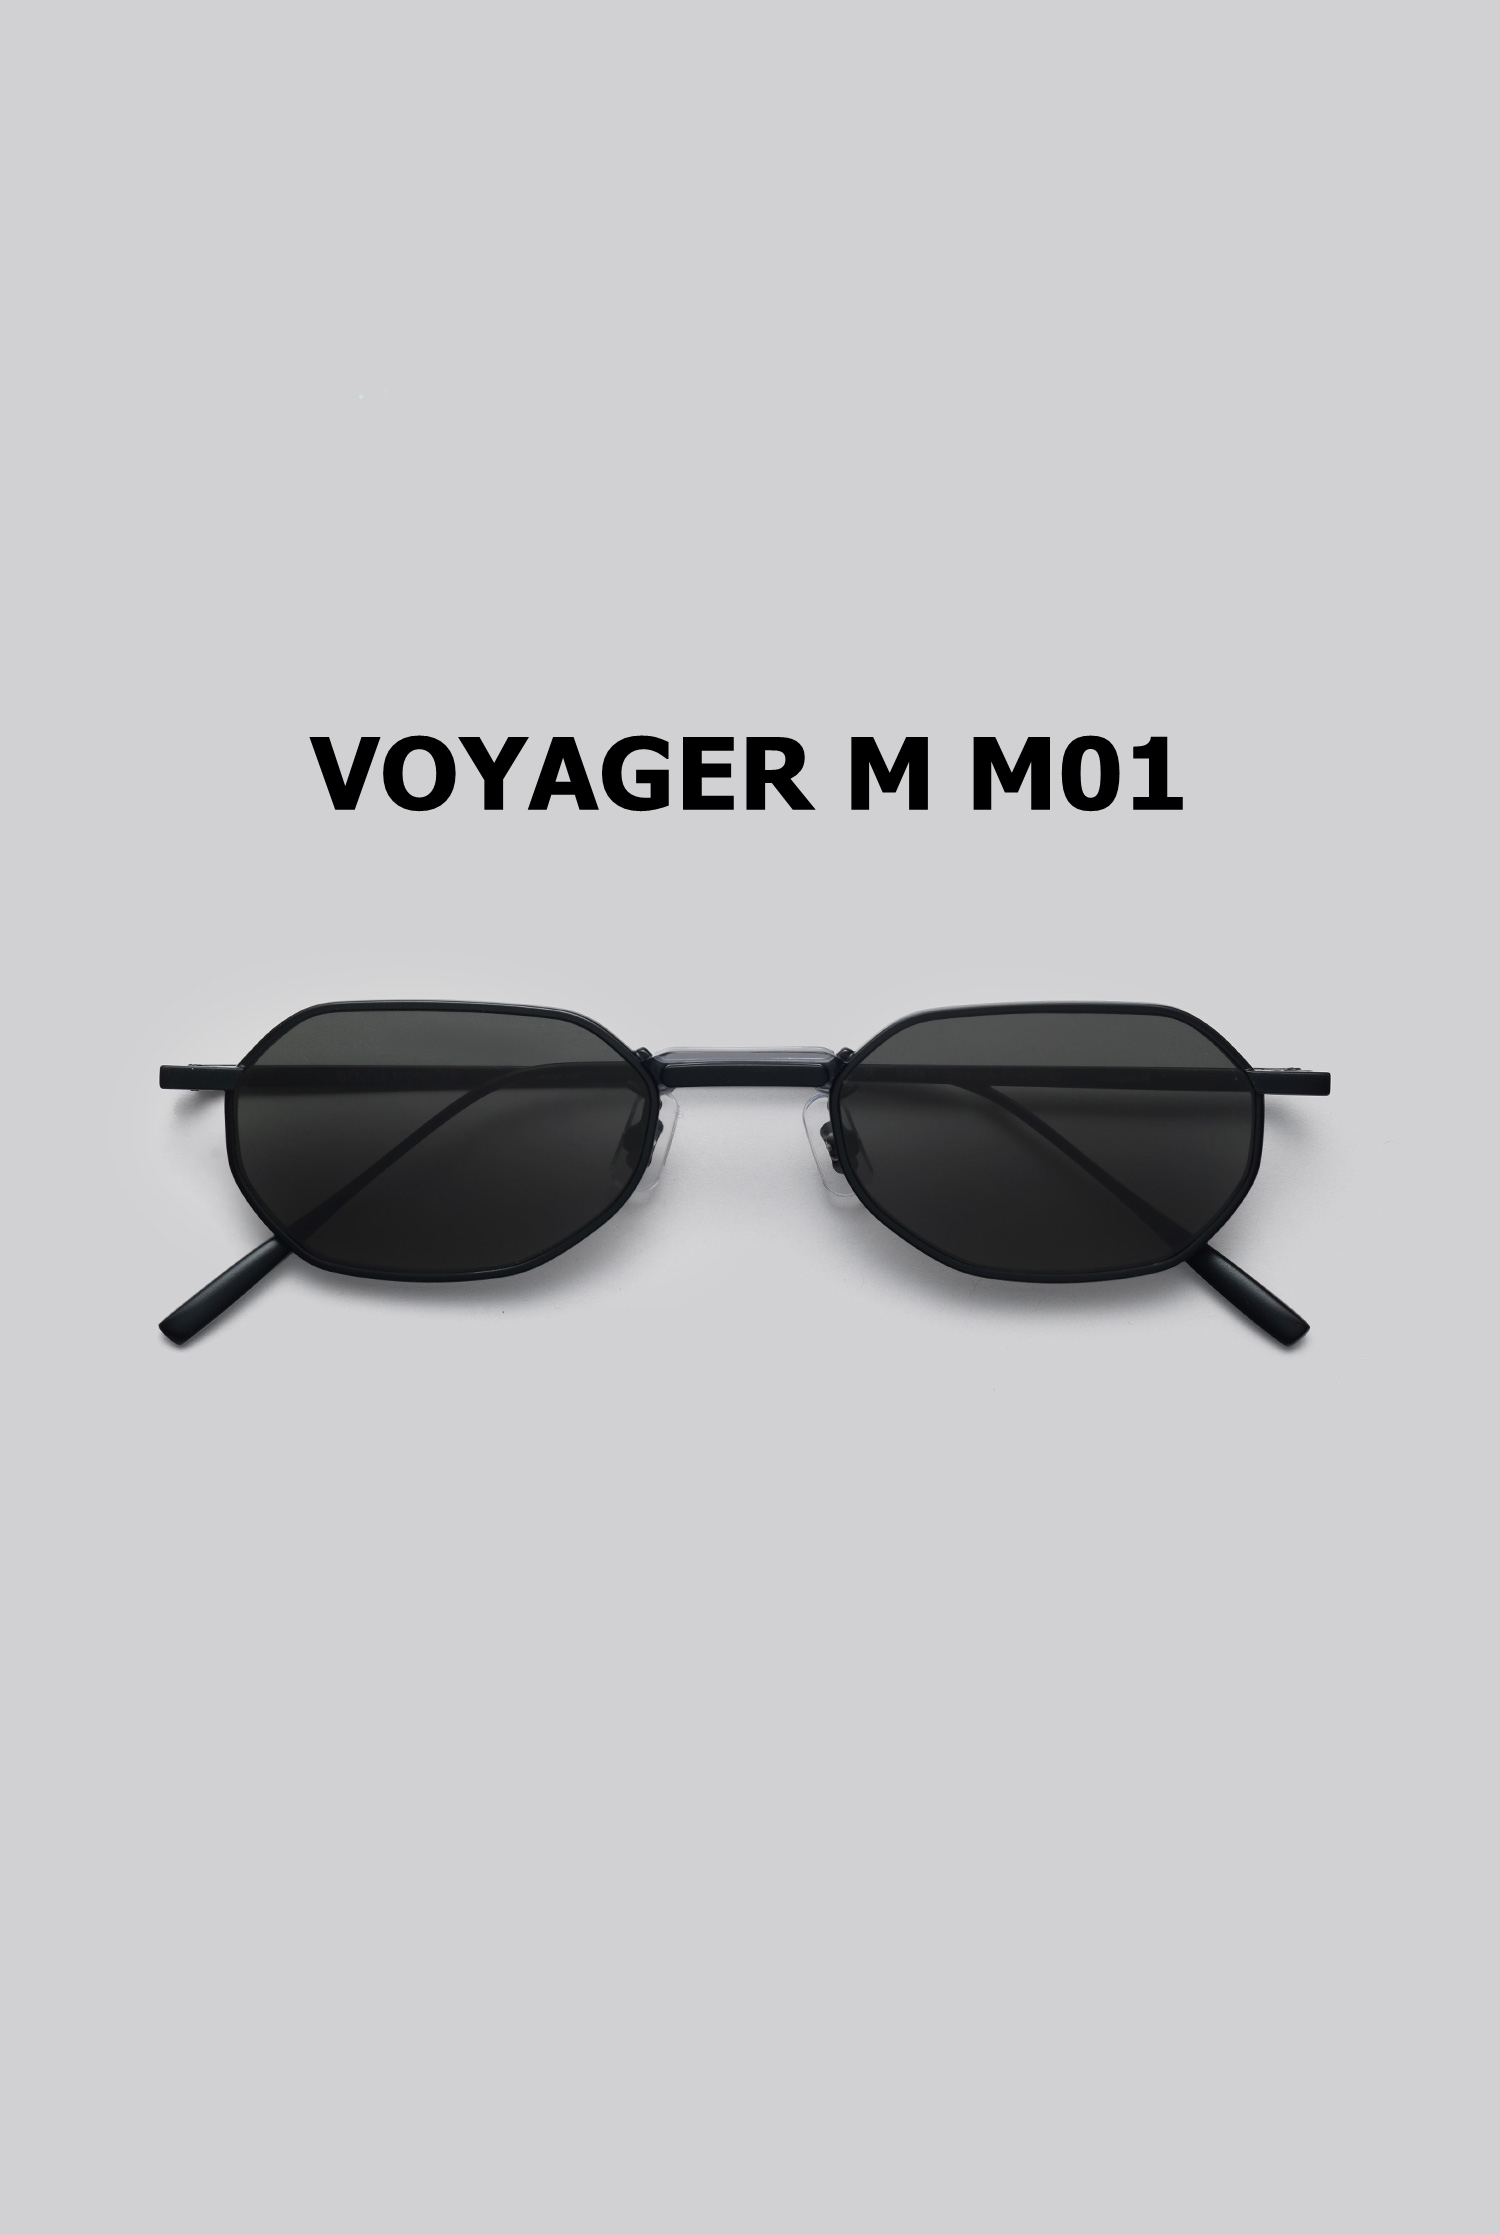 VOYAGER M M01